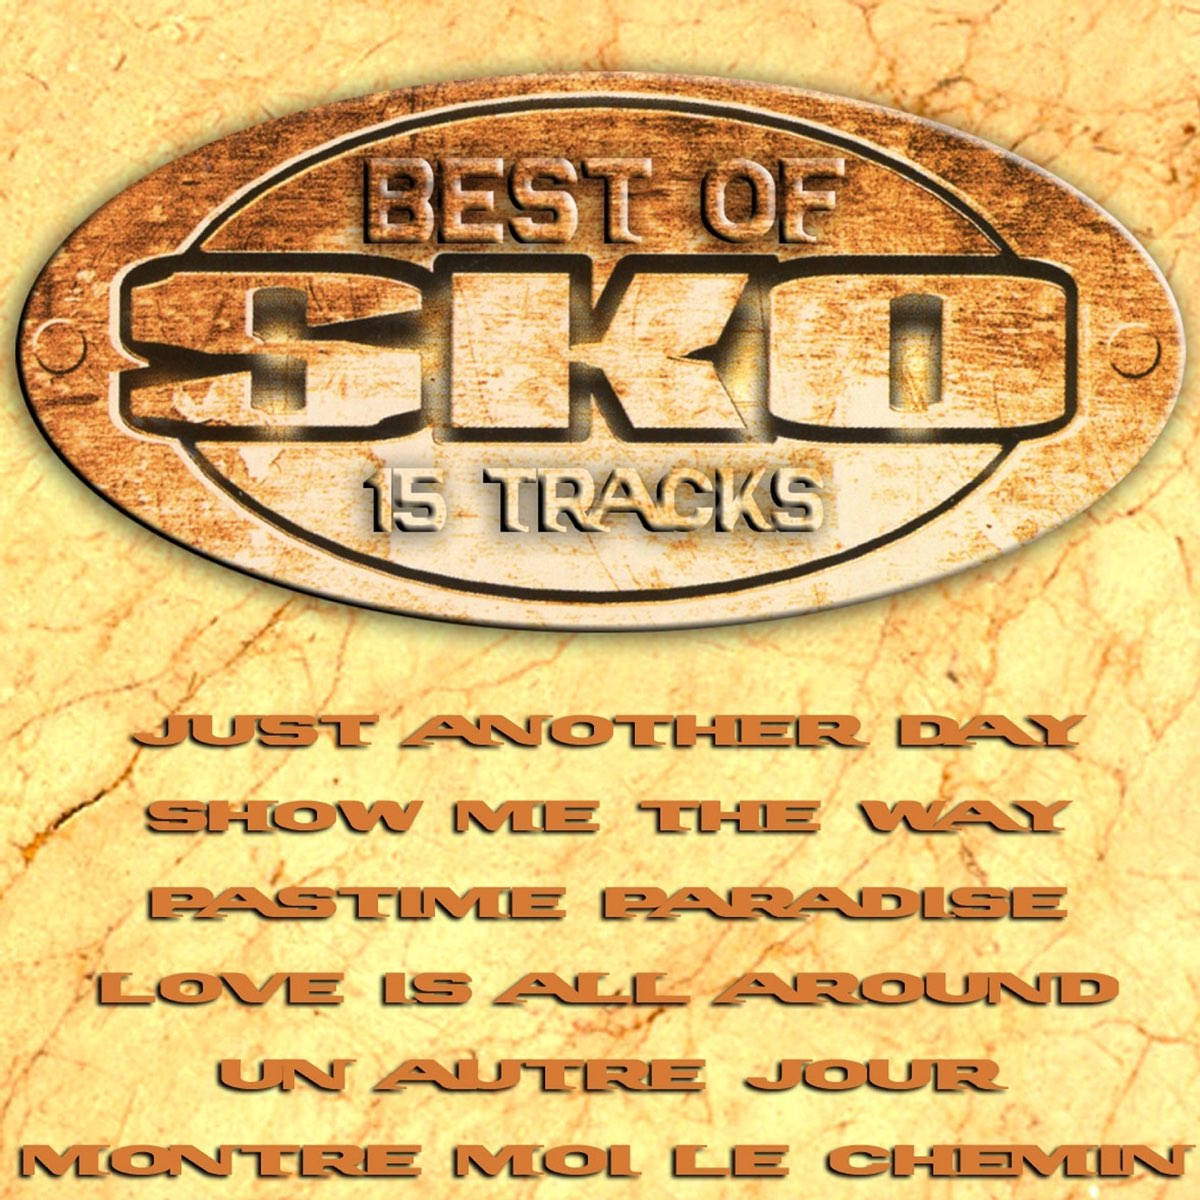 Best of Sko - Album by Sko - Apple Music